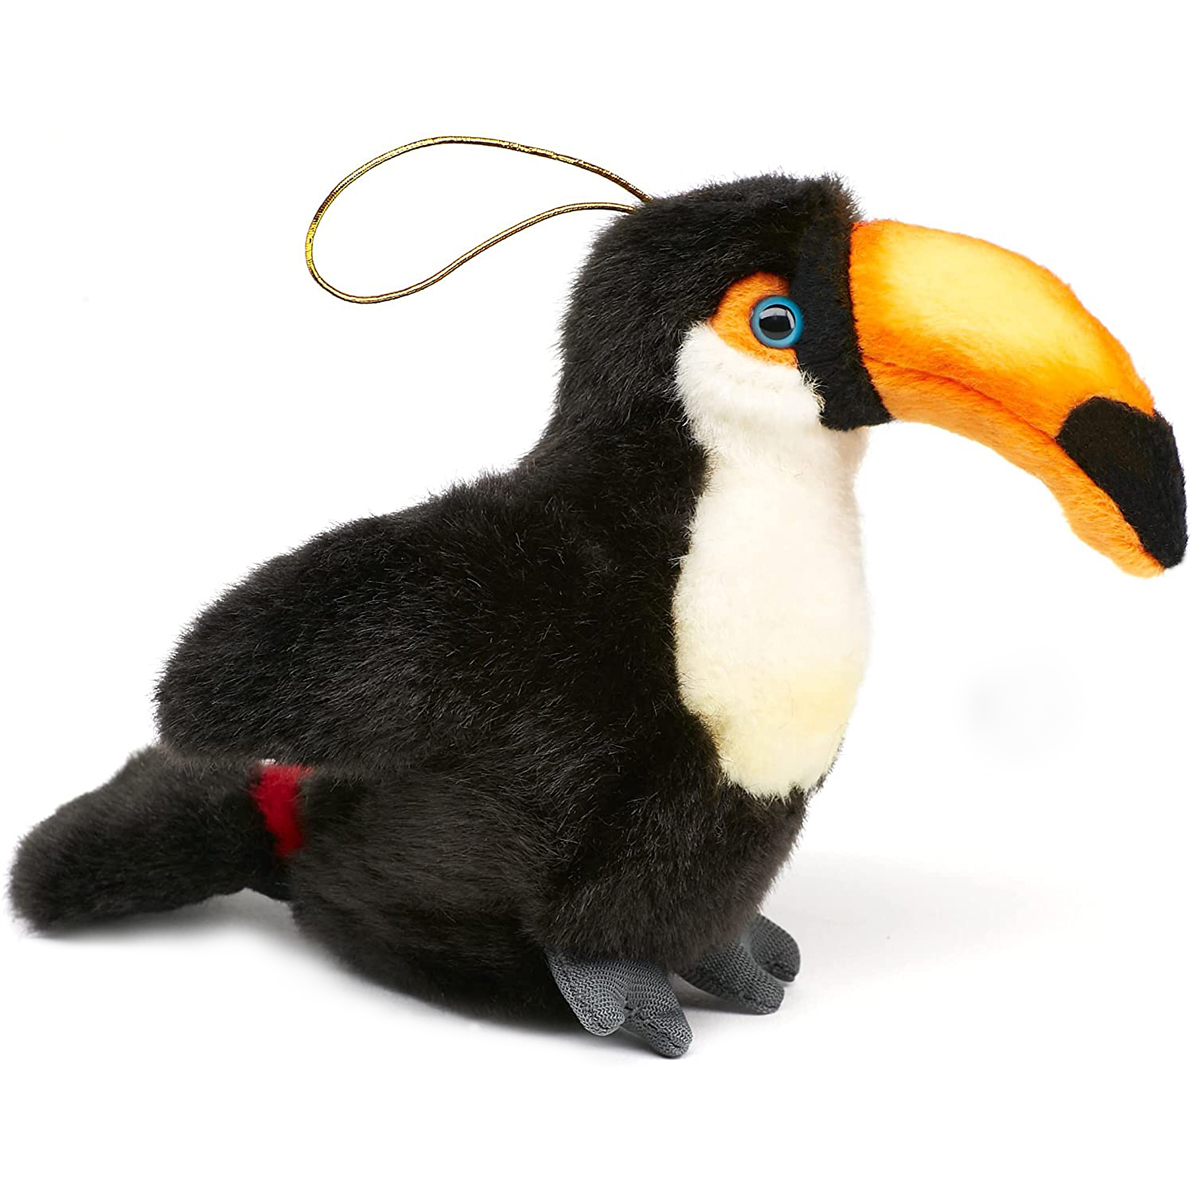 Uni-Toys - Riesentukan - 13 cm (Höhe) - Vogel - Plüschtier, Kuscheltier